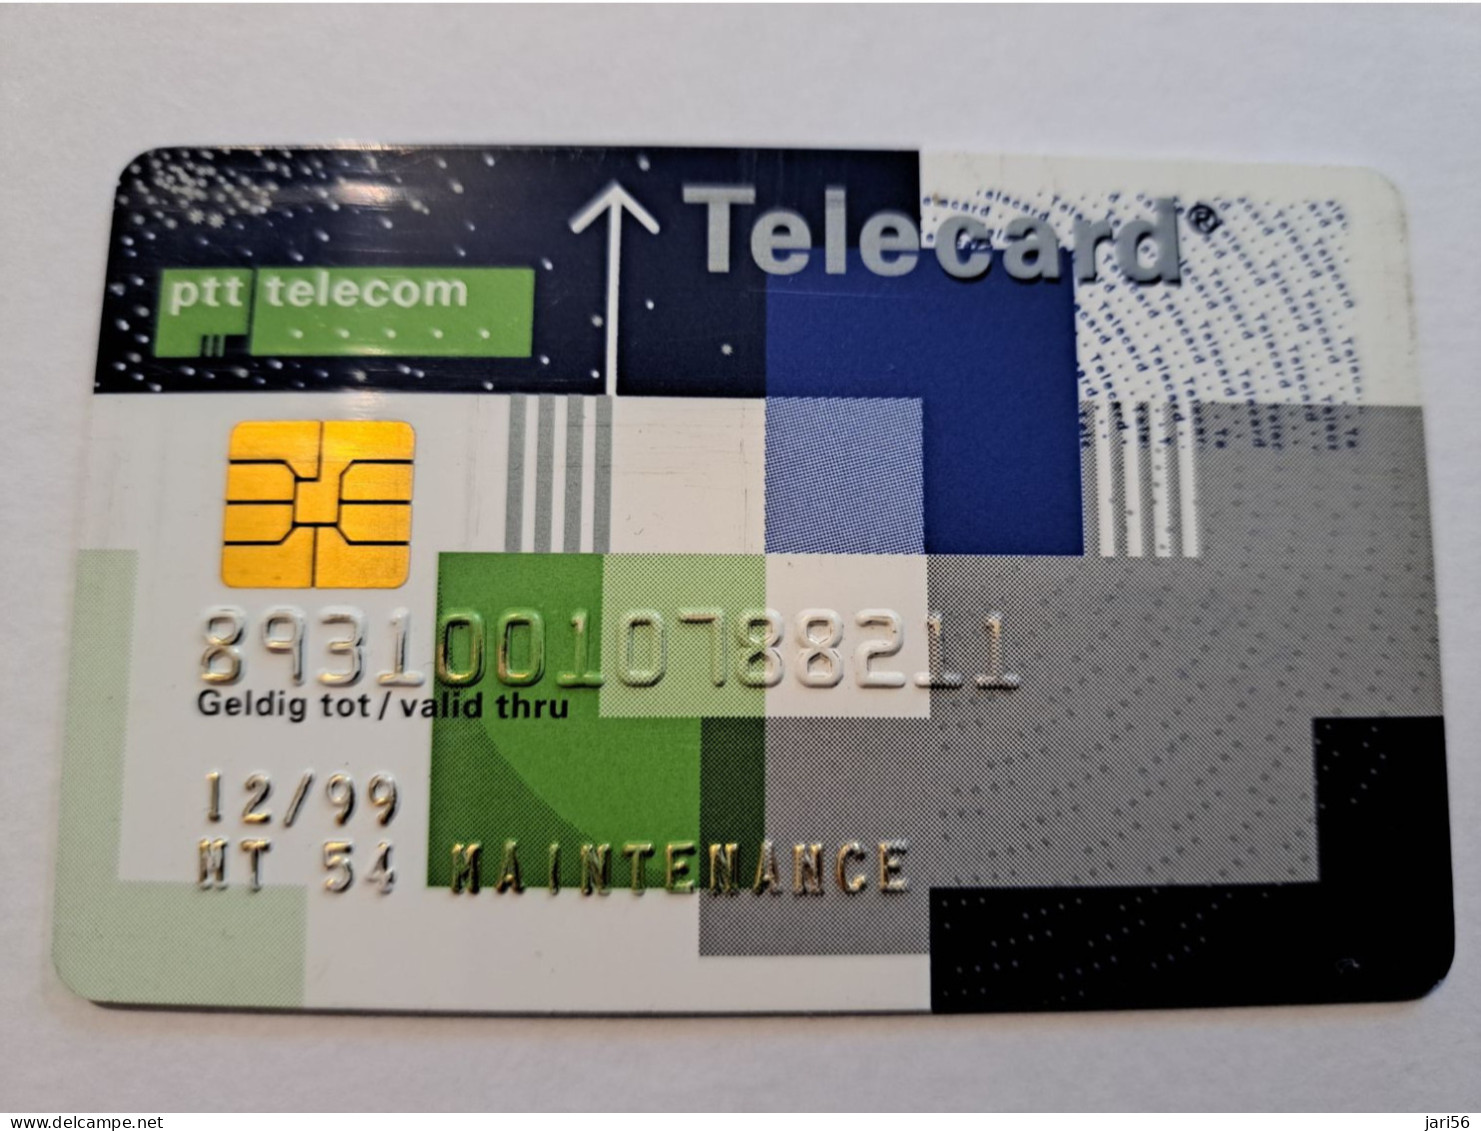 NETHERLANDS  /CHIPCARD/ MAINTENANCE  PTT TELECOM/TELECARD/ VERY RARE !!  / DATE 12/99   ** 16305** - Test & Service